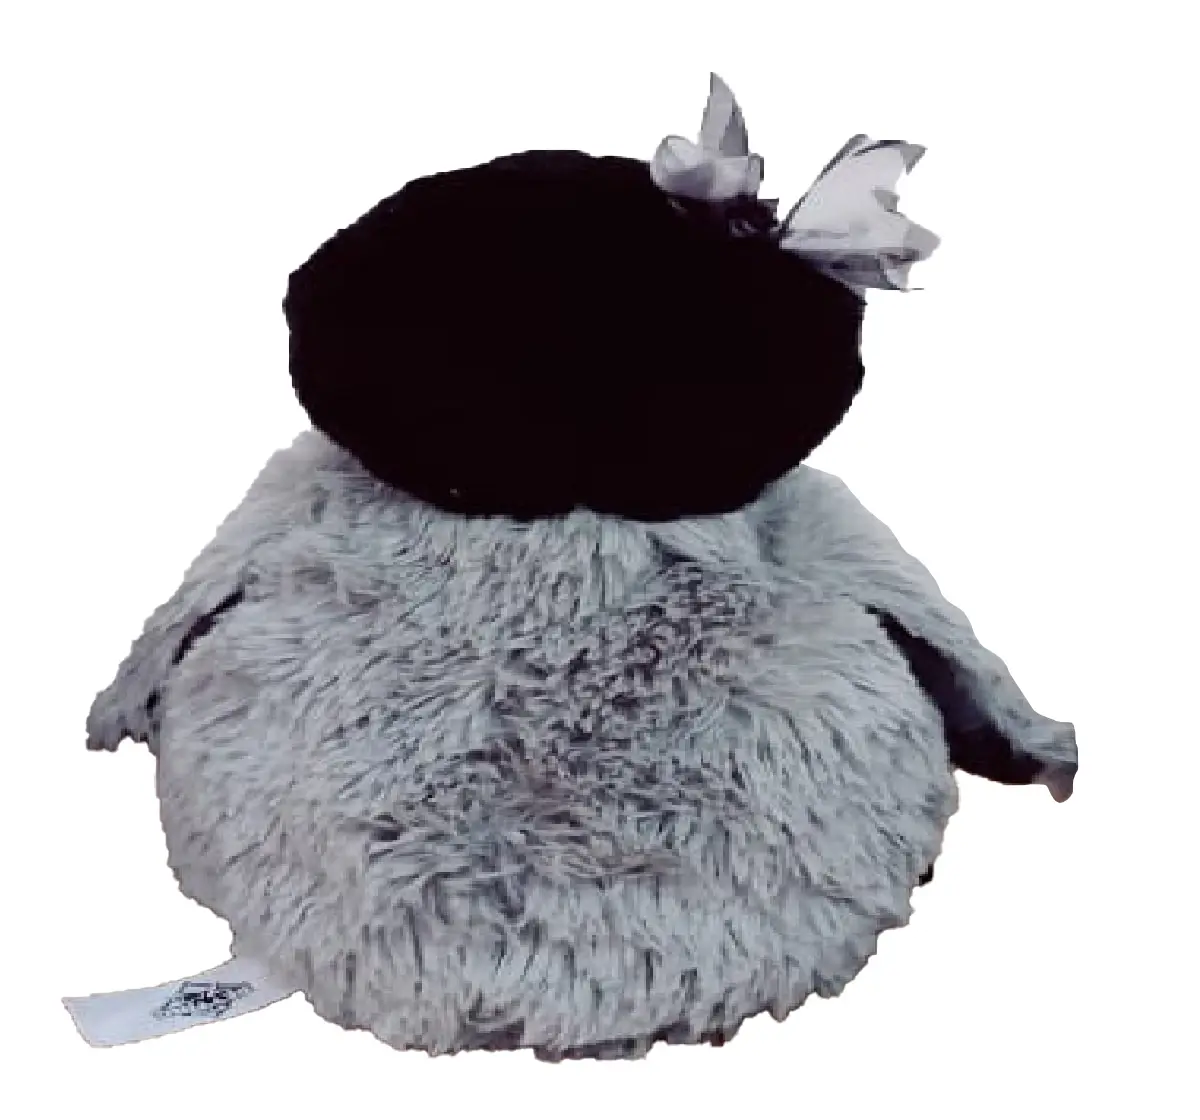 Lash Z Penguin Chick Soft Toy 11"27Cm